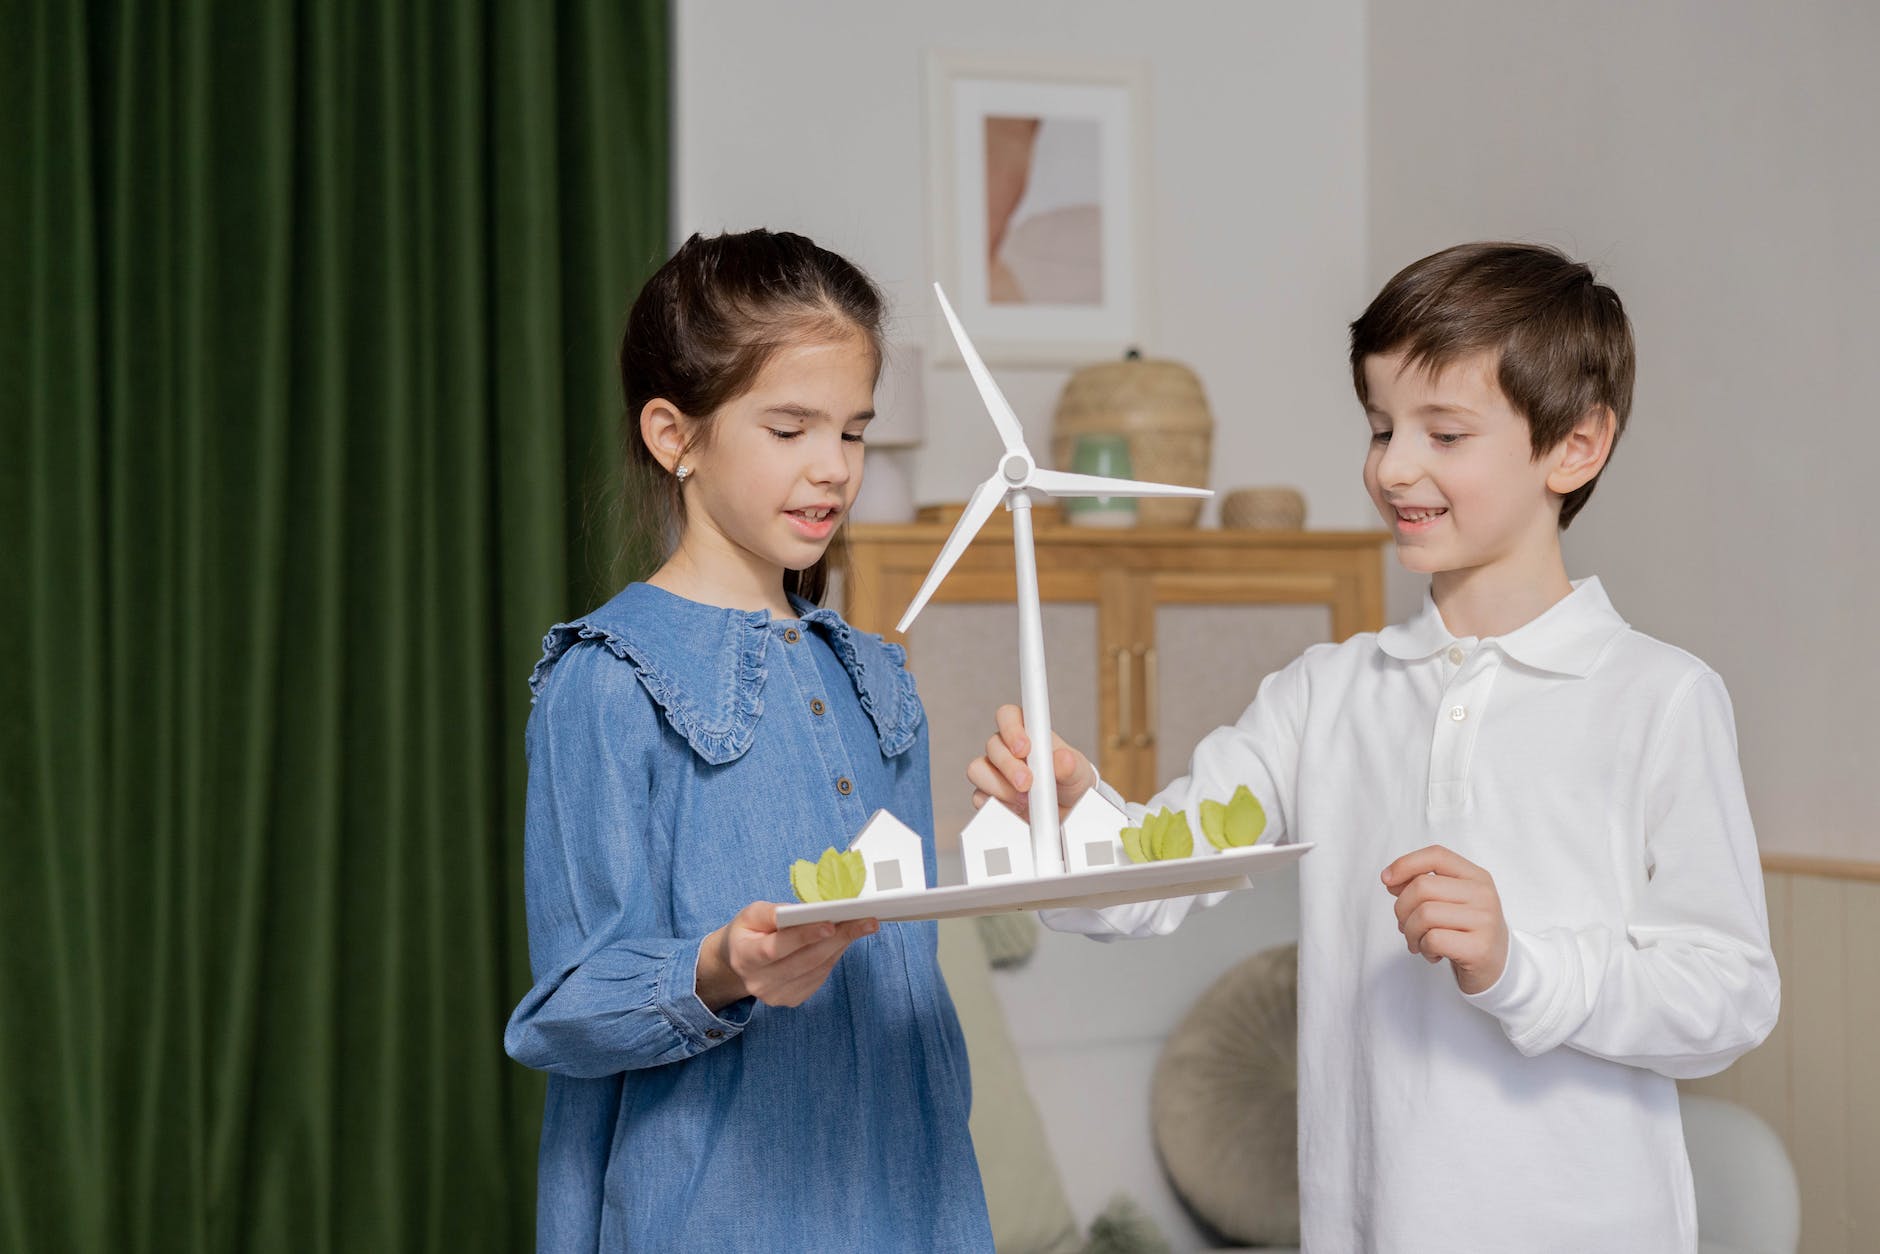 children carrying a wind turbine diorama